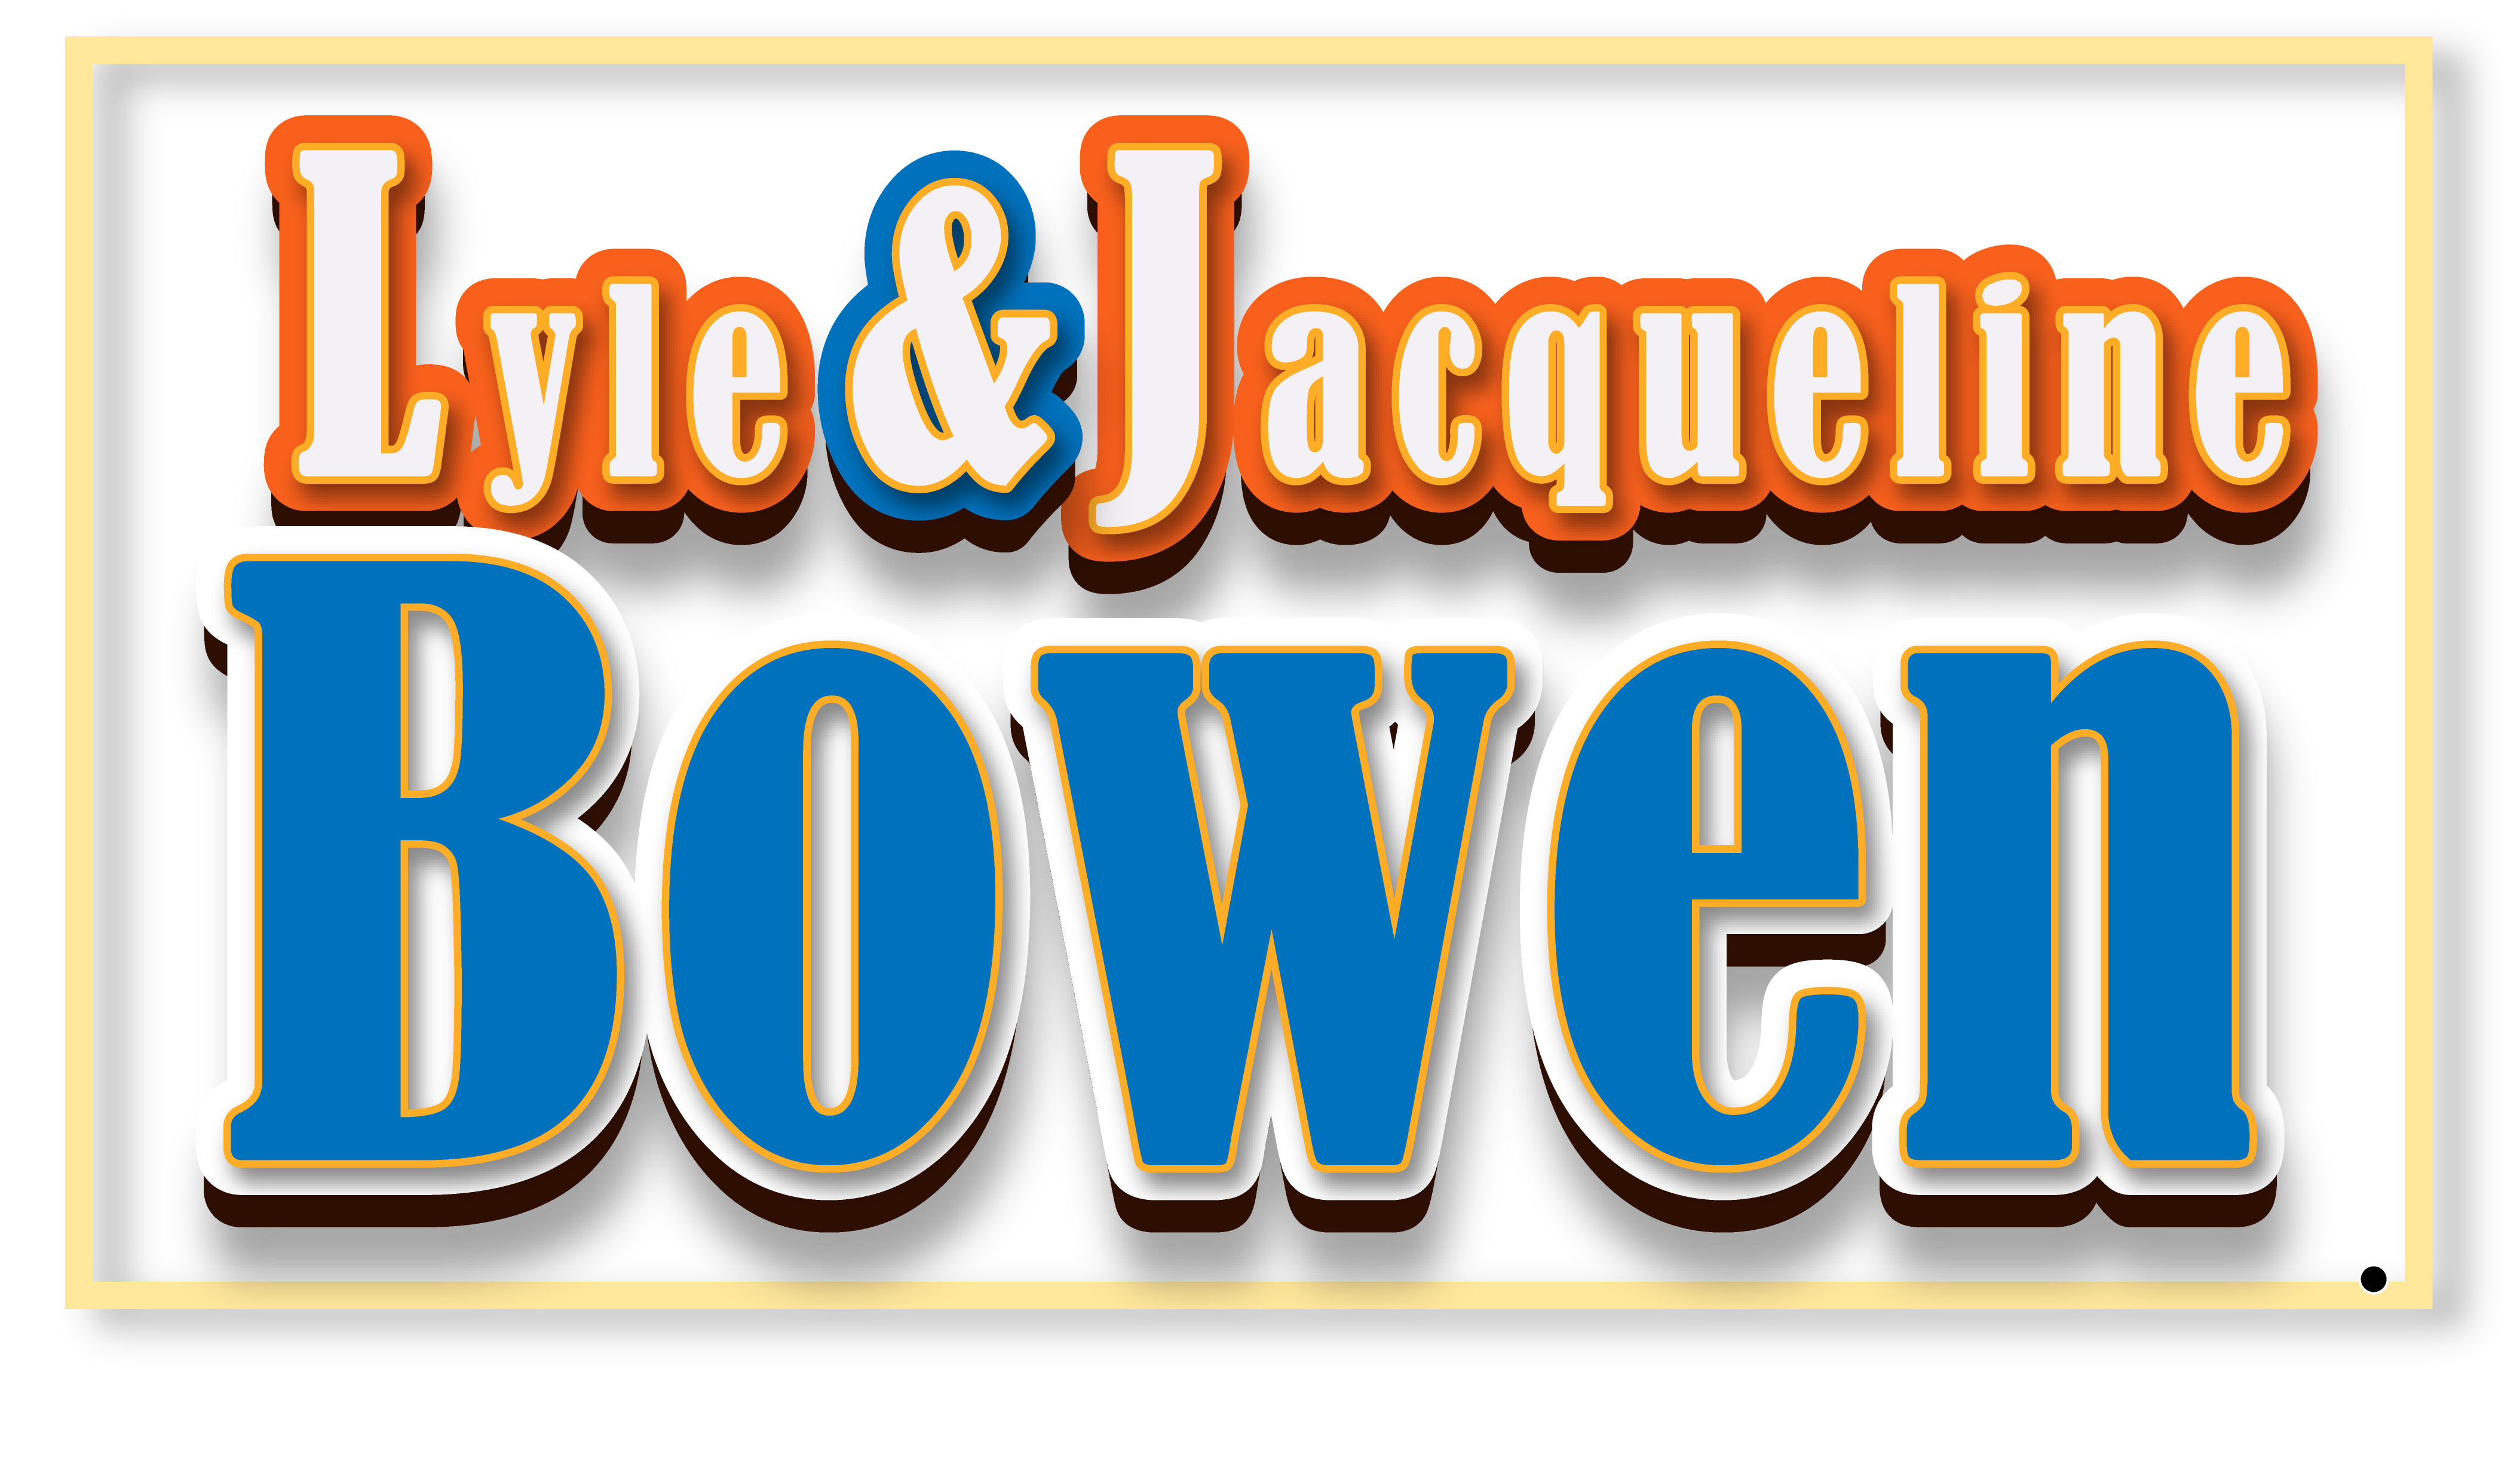 Lyle & Jacqueline Bowen